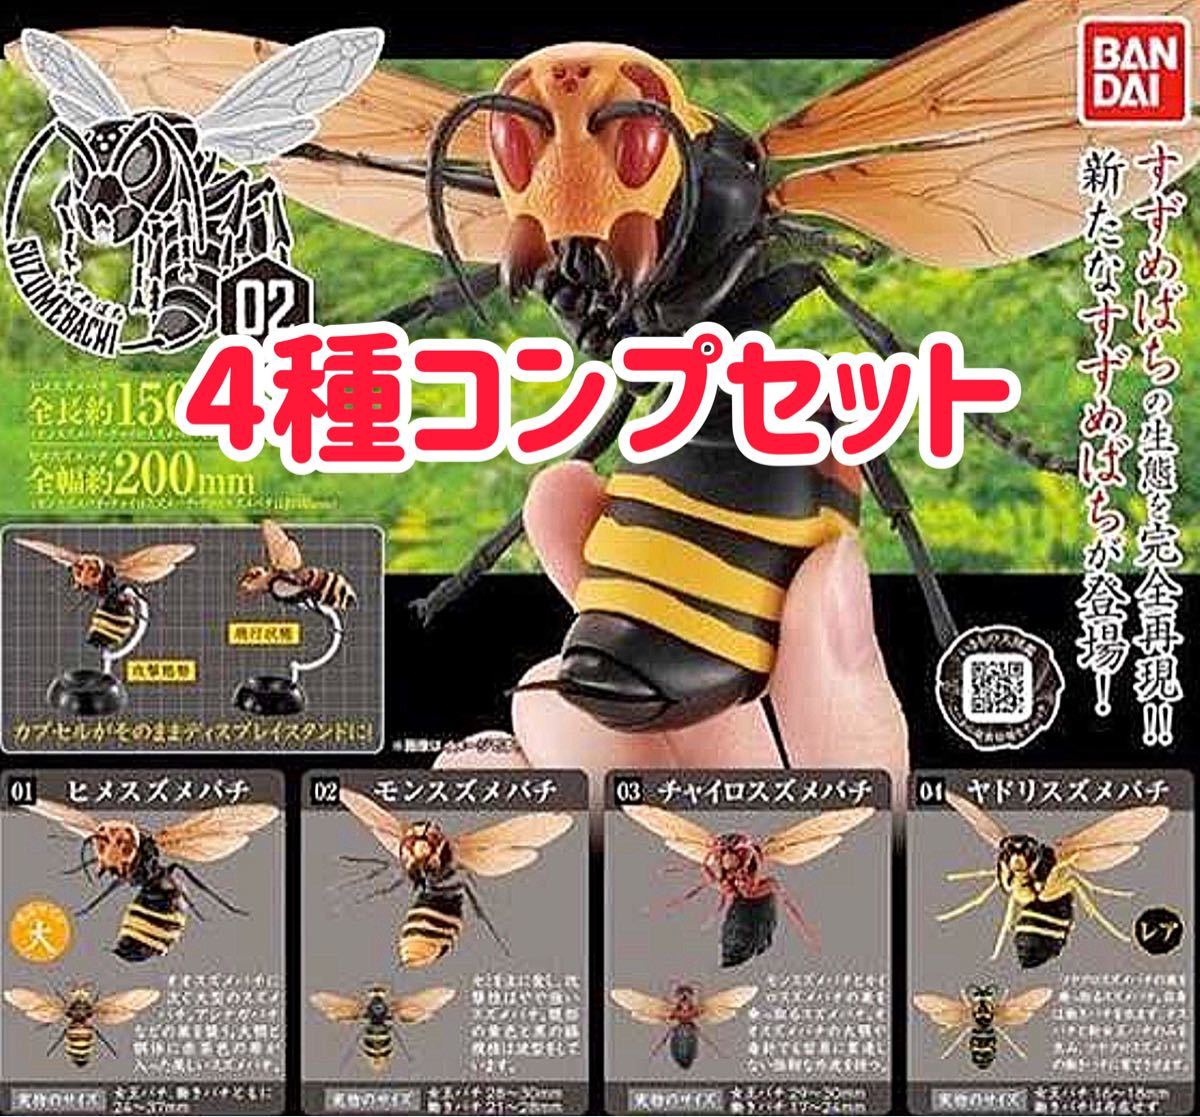 いきもの大図鑑】スズメバチ02 全4種コンプセット ヒメスズメバチ モン